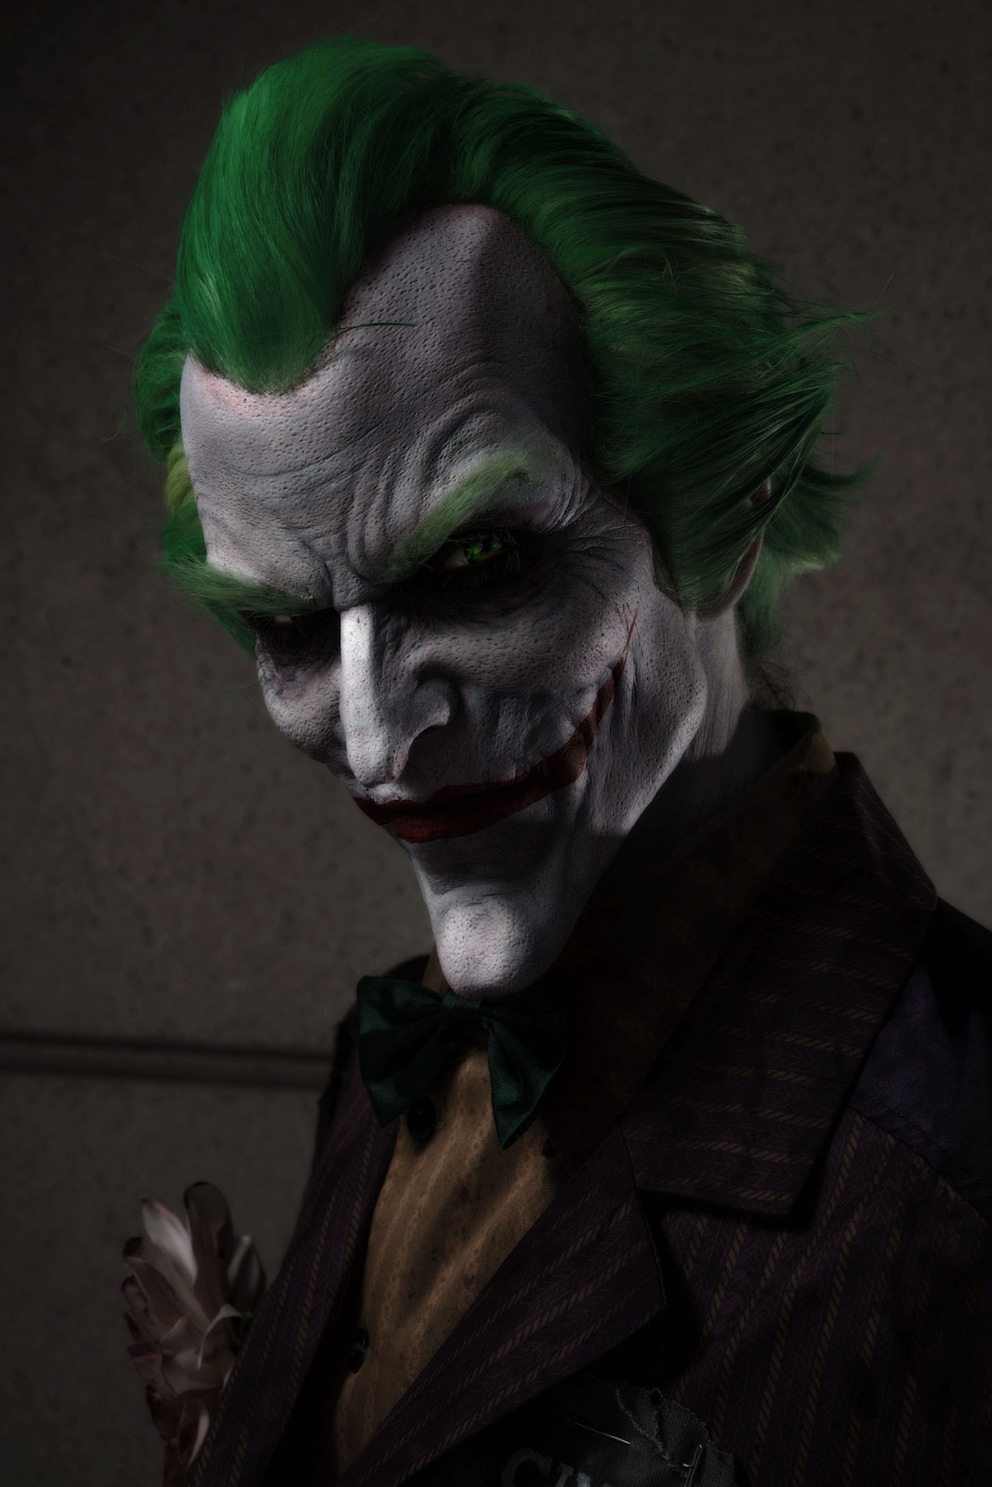 Arkham Asylum Joker für die San Diego ComicCon durch die Cinema Makeup School. Skulptur: Lee Joyner, aufgetragen durch Gabi Gonzalez. Model: Strange Dave